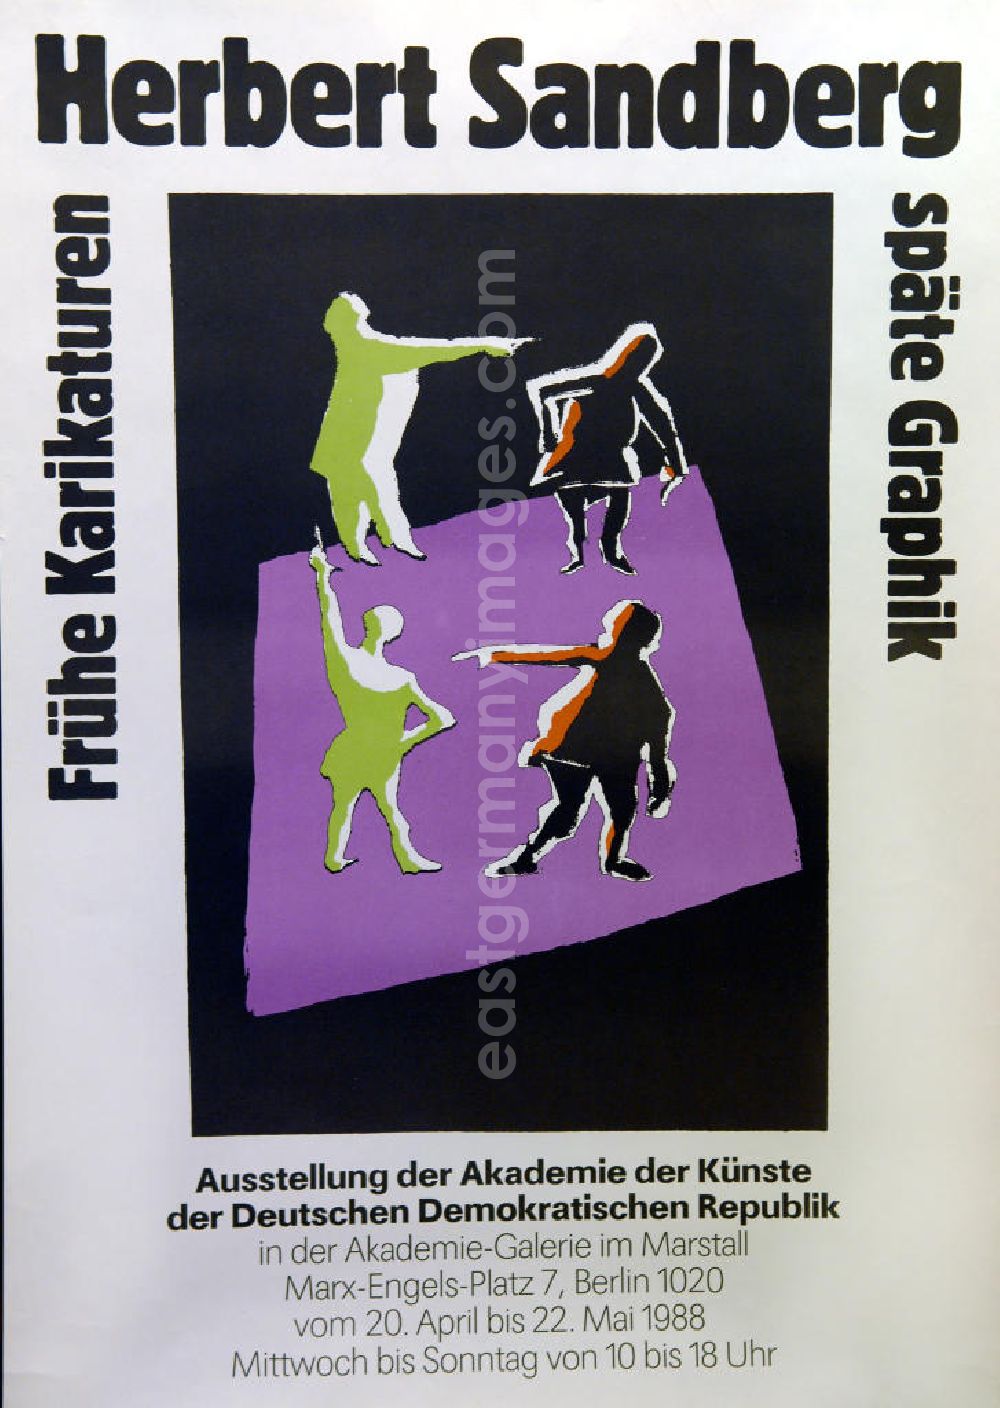 GDR photo archive: Berlin - Plakat der Ausstellung Herbert Sandberg, frühe Karikaturen, späte Graphik vom 20.04.-22.